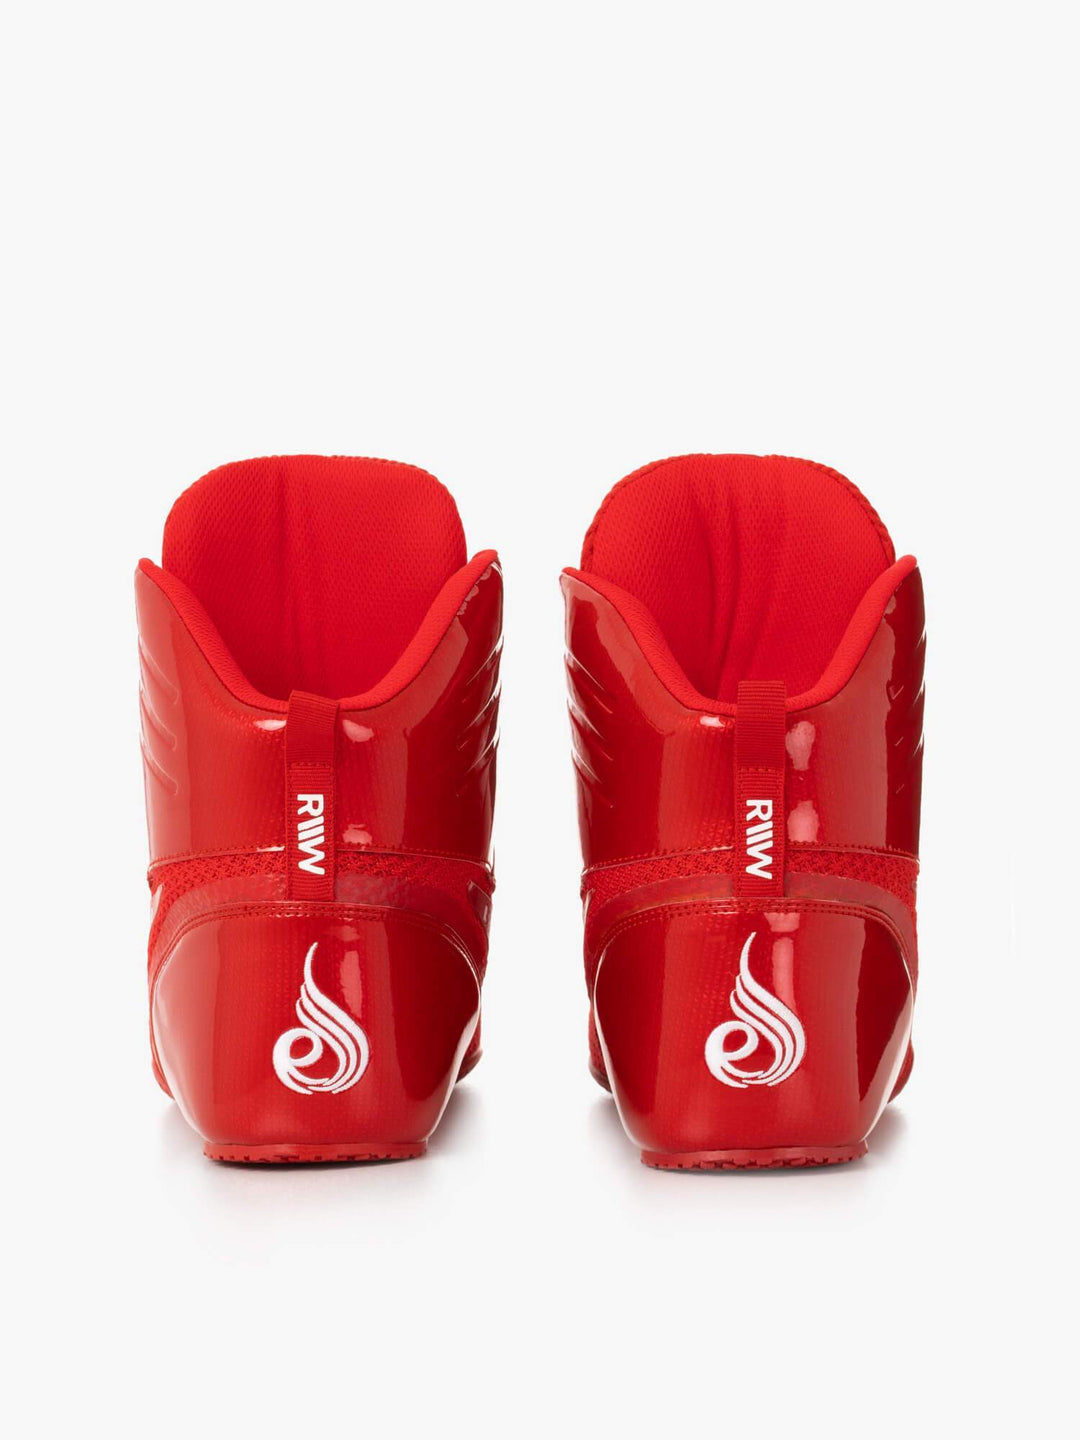 D-Mak Carbon Fibre - Red Shoes Ryderwear 